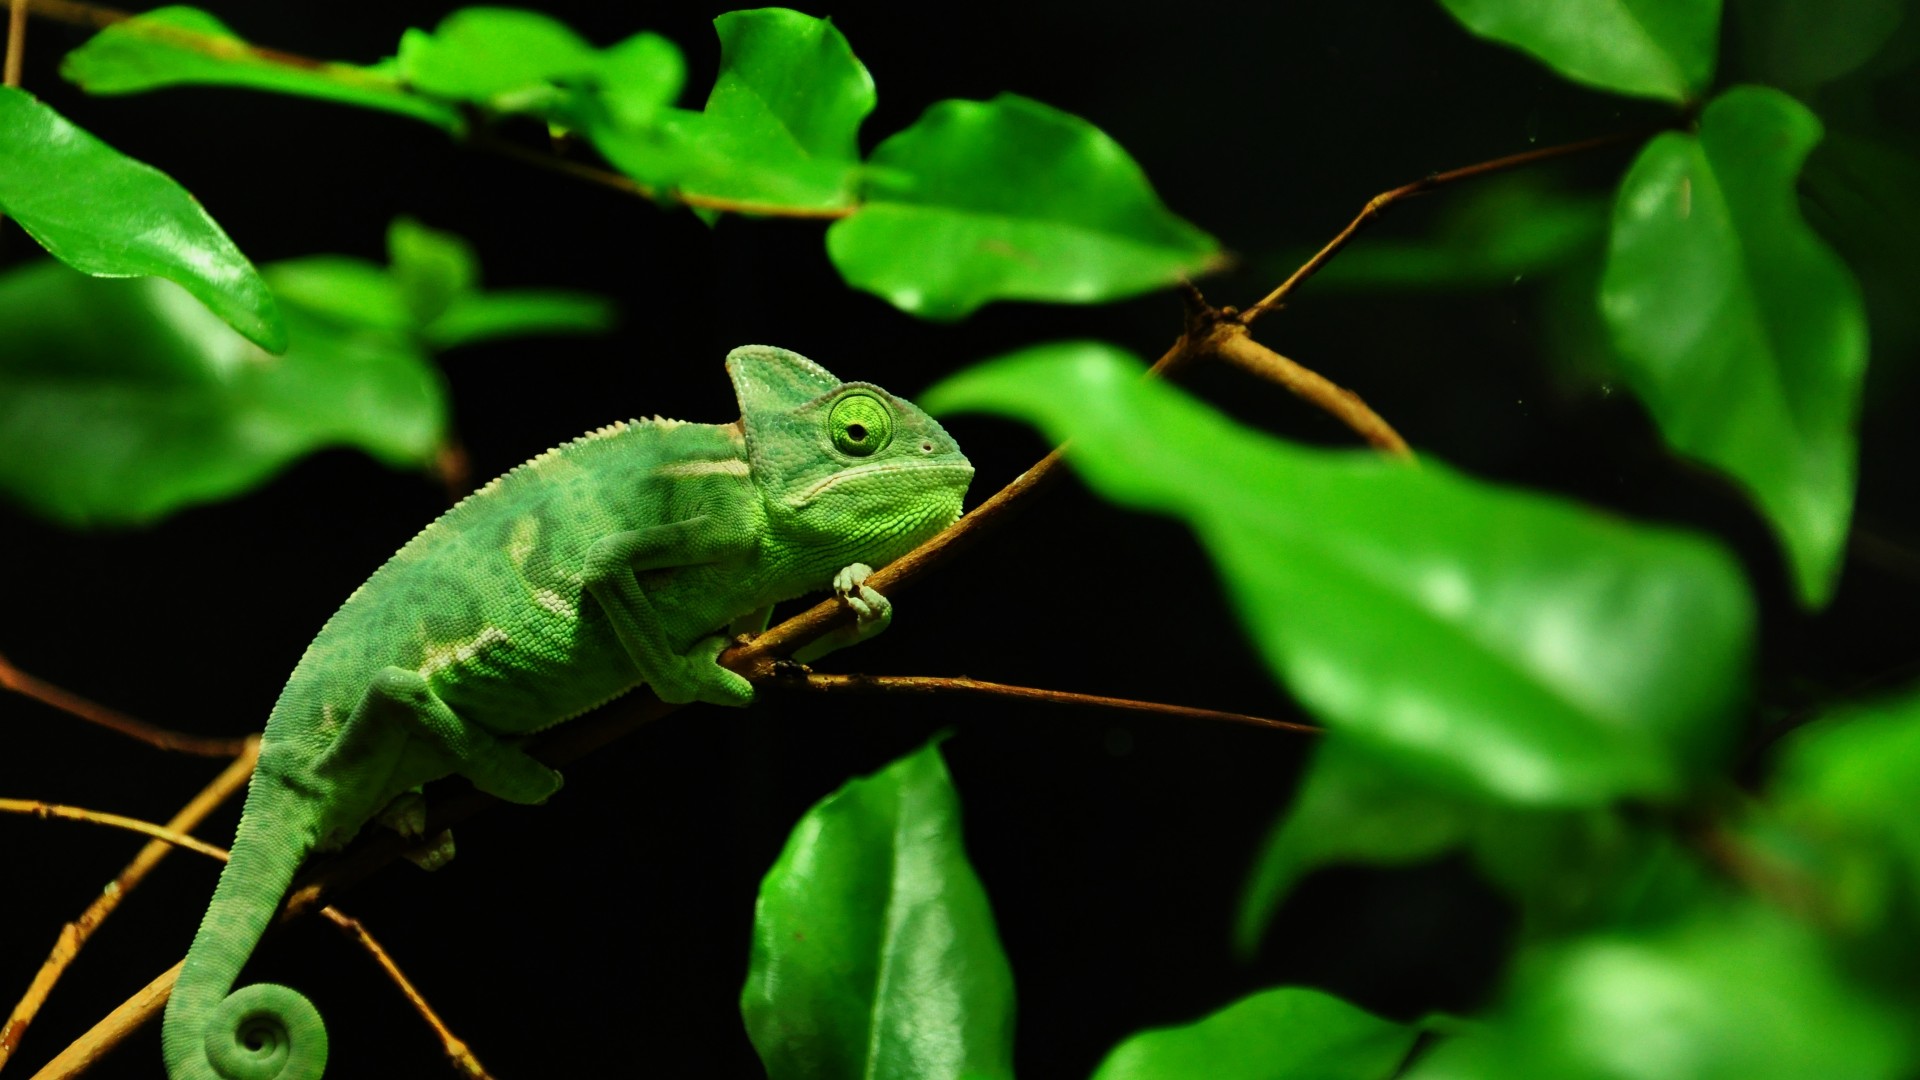 Chameleon, Madagaskar, rain-forest, green, leaves, eyes, black background (horizontal)